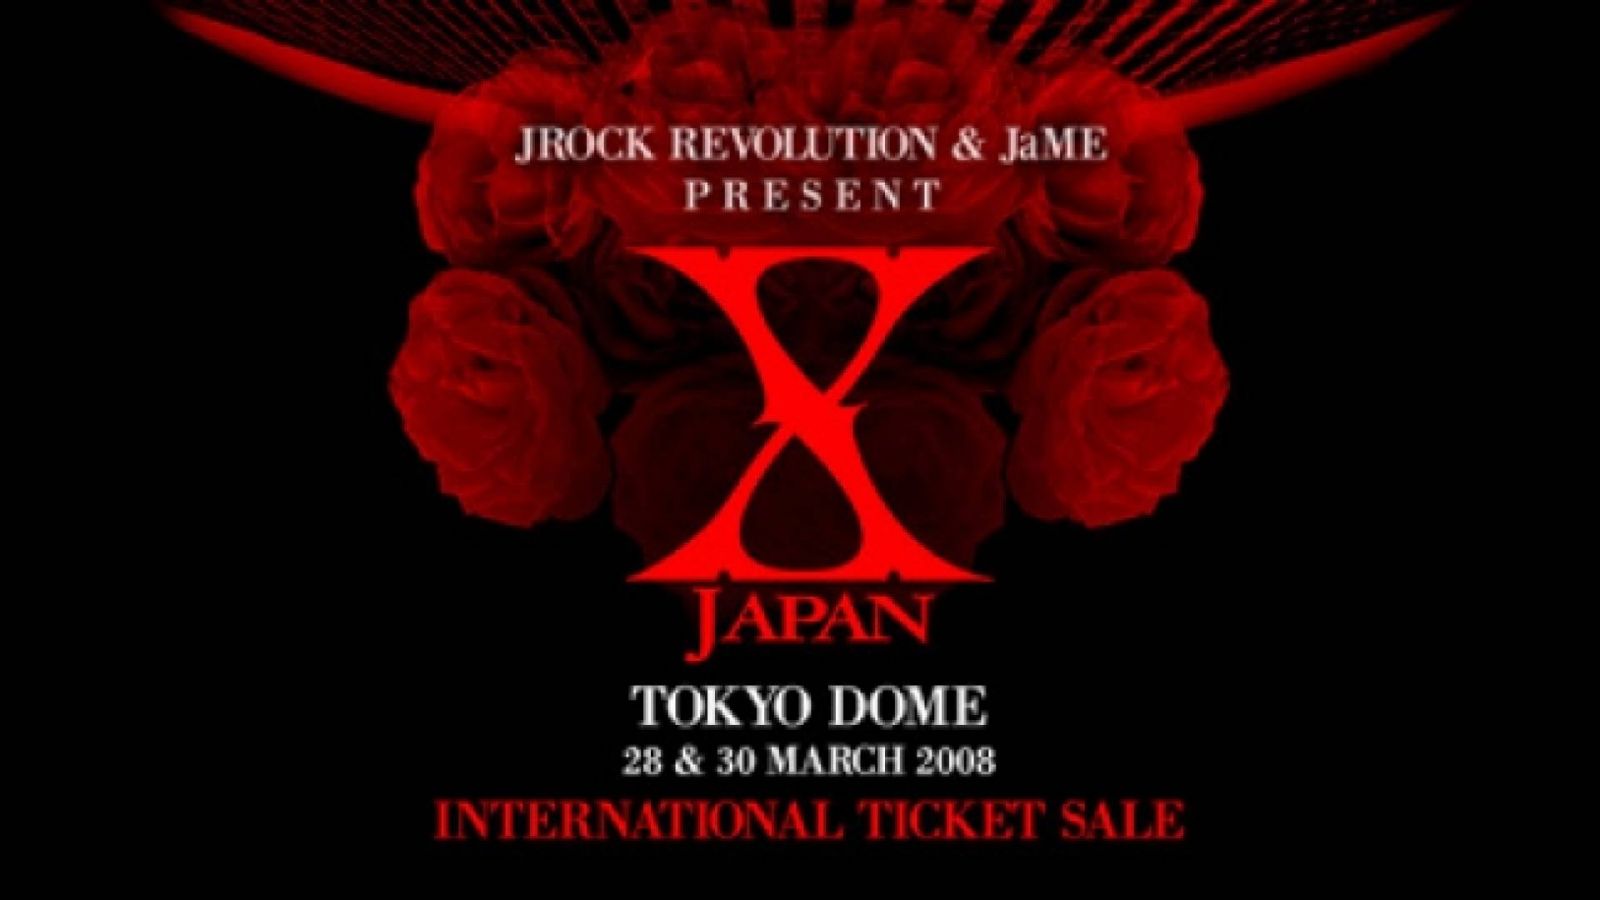 Vente internationale des tickets pour X Japan © X JAPAN, Jrock Revolution, JaME, EINSOF Marketing Group 